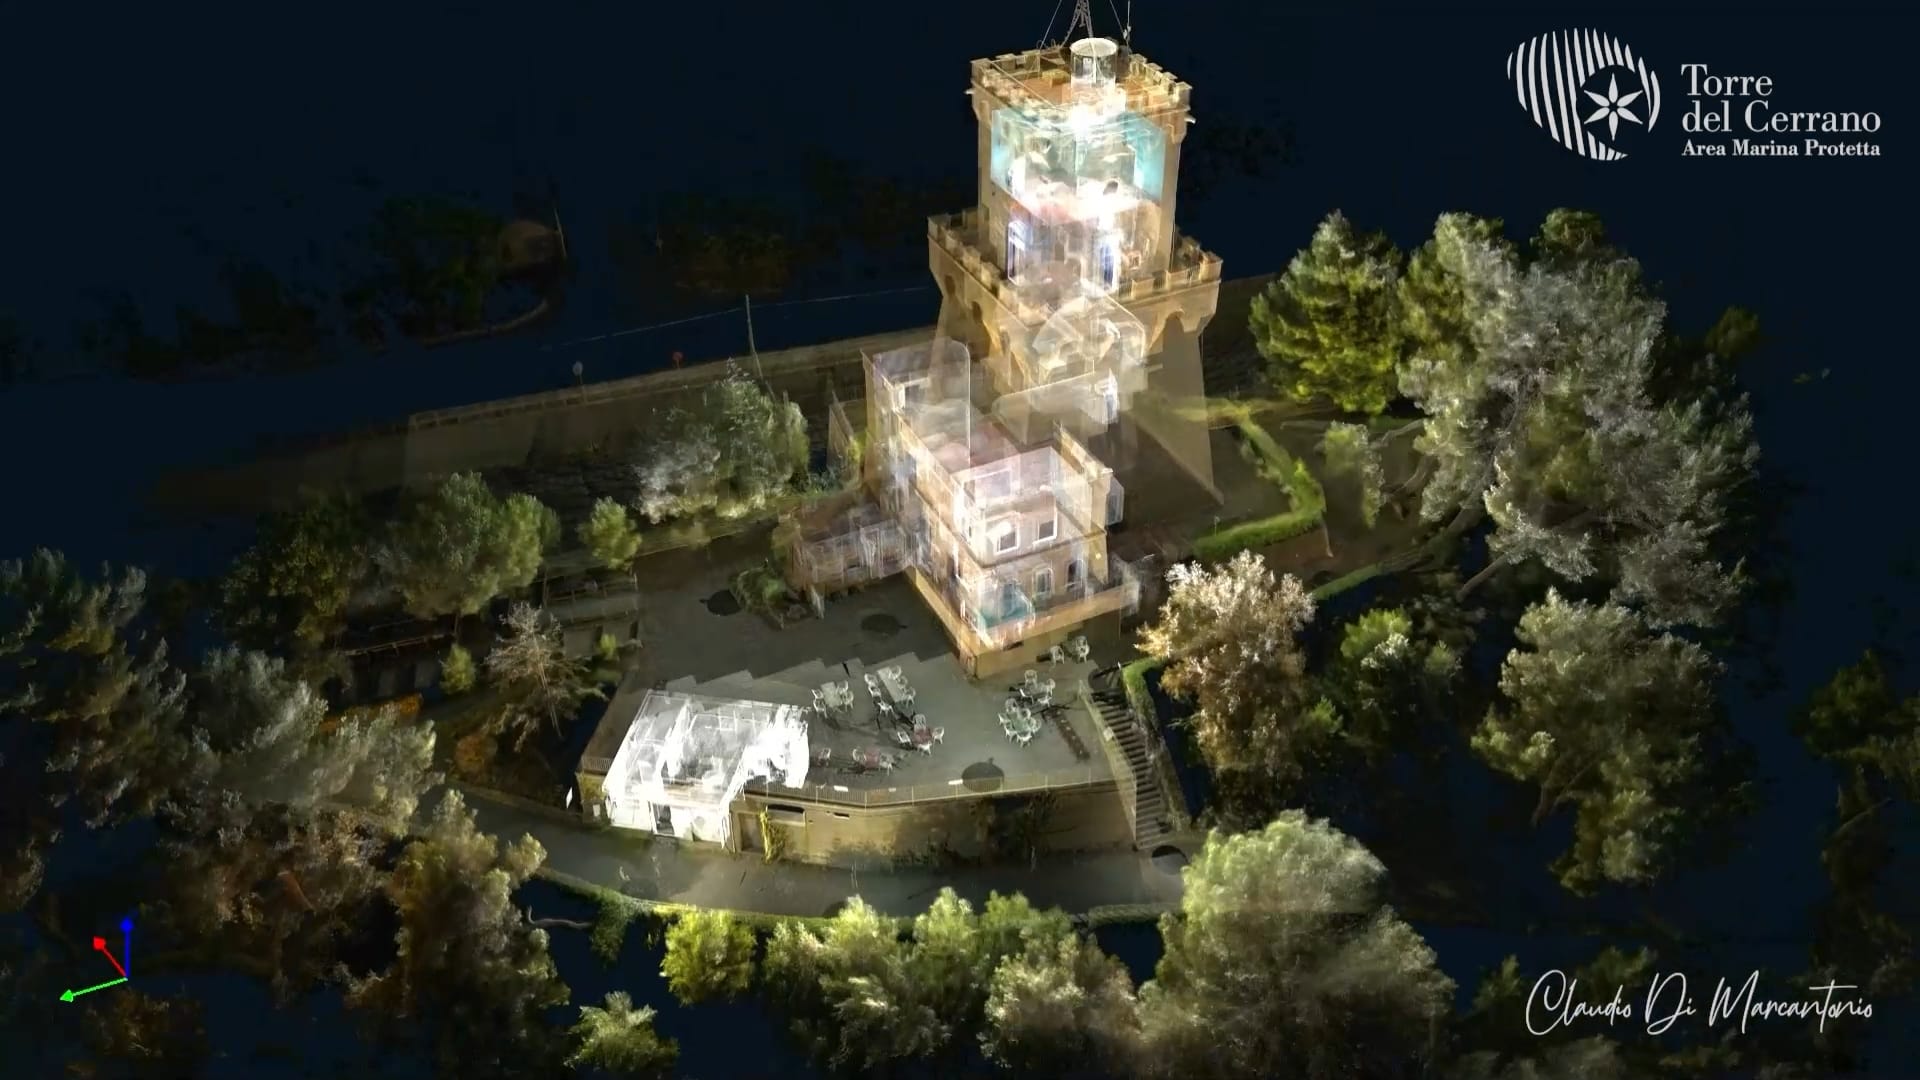 Efficientamento energetico della Torre di Cerrano: le spettacolari immagini della Torre nel rilievo laser scanner